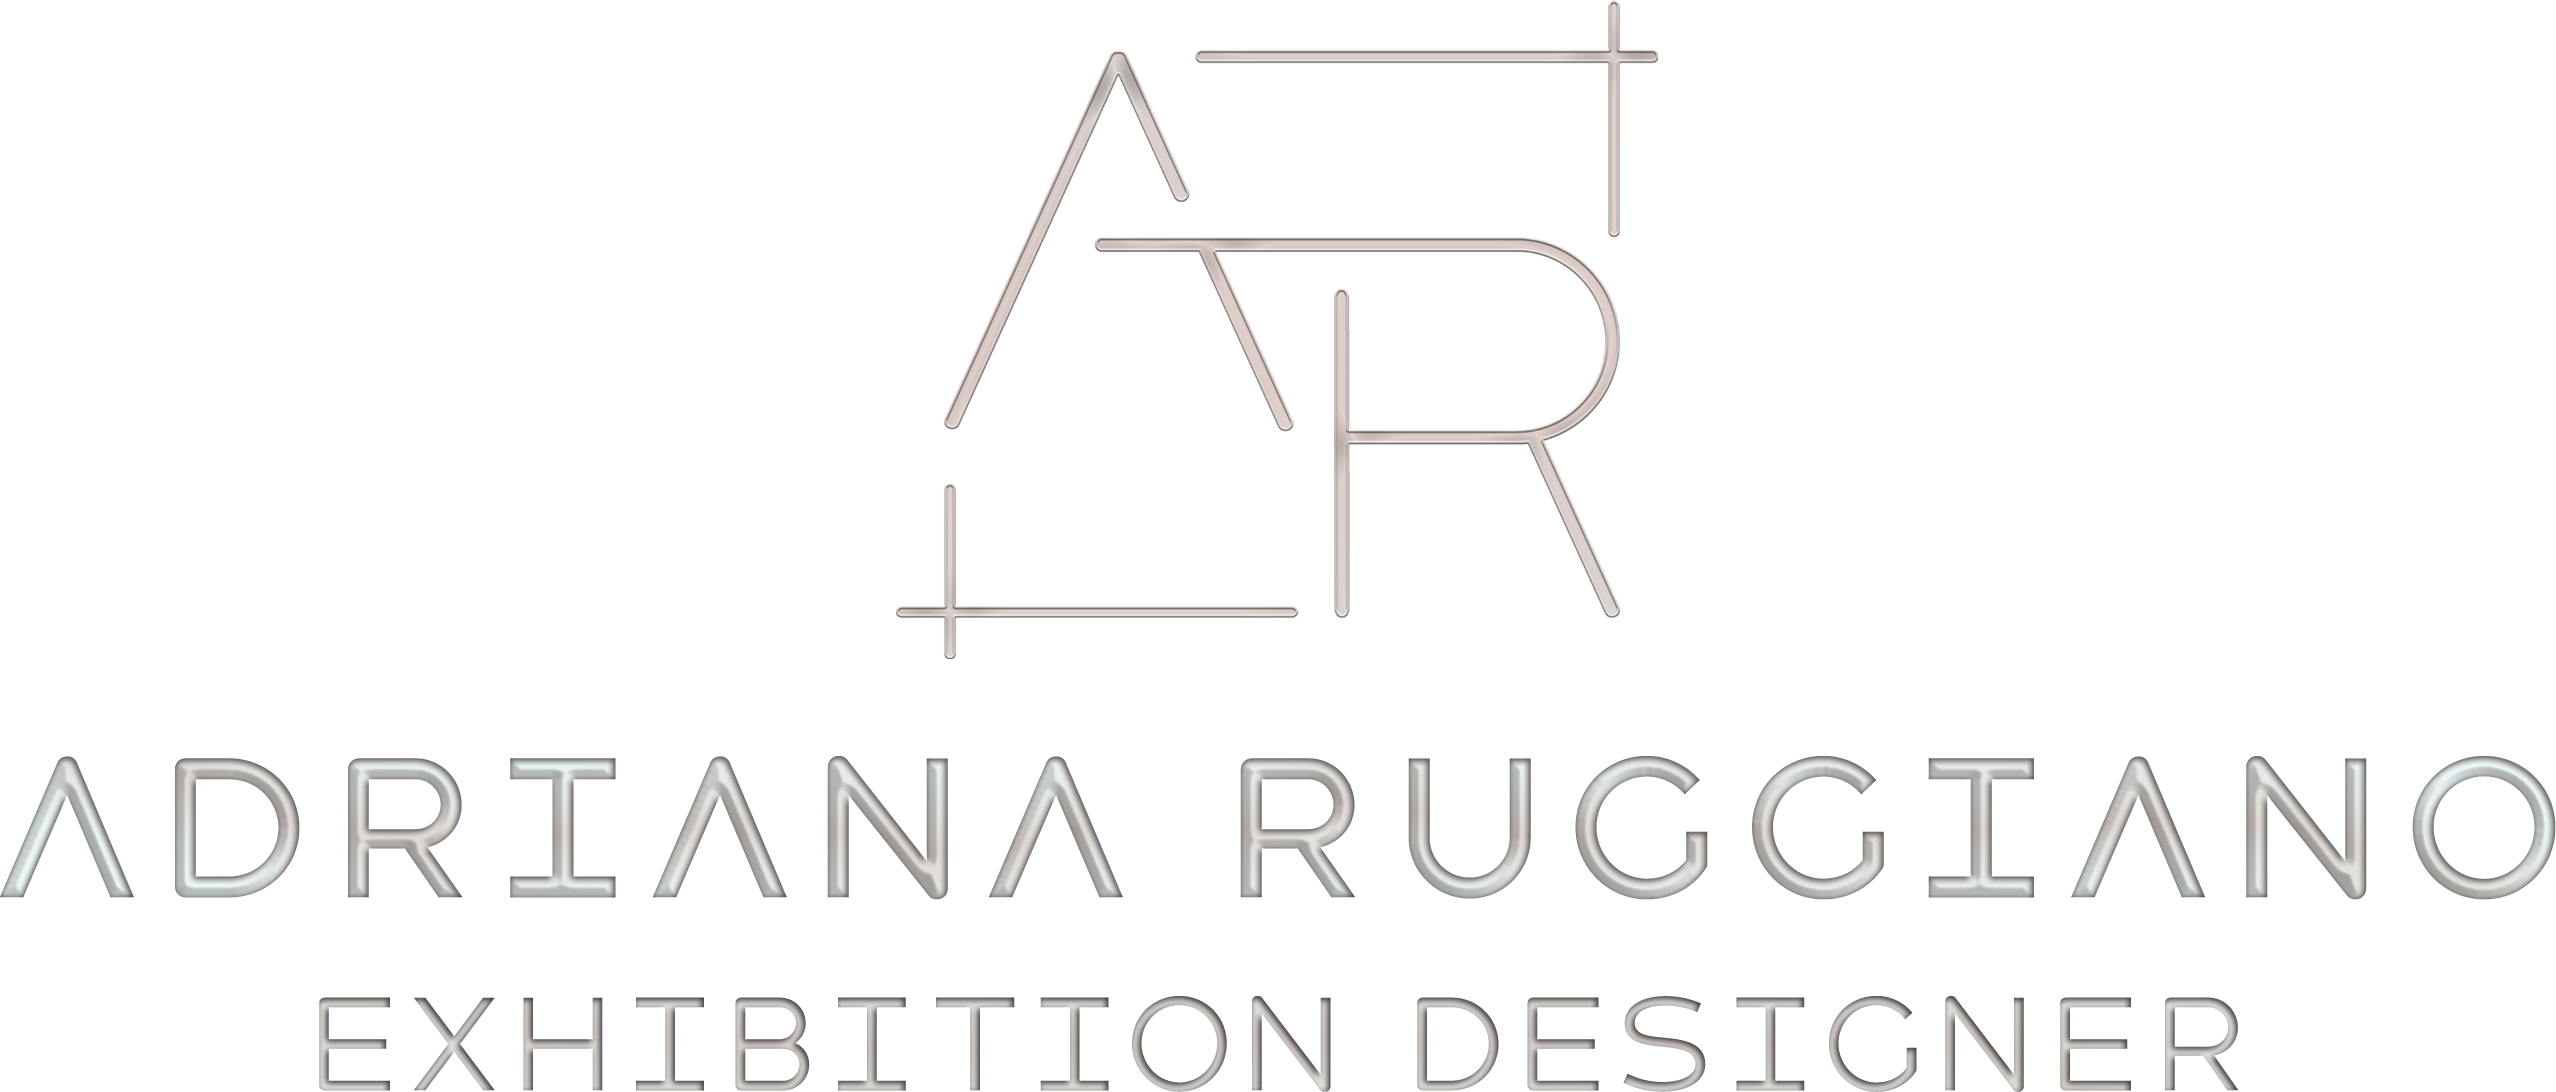 Adriana Ruggiano - Exhibition Designer - Logo rettangolare2